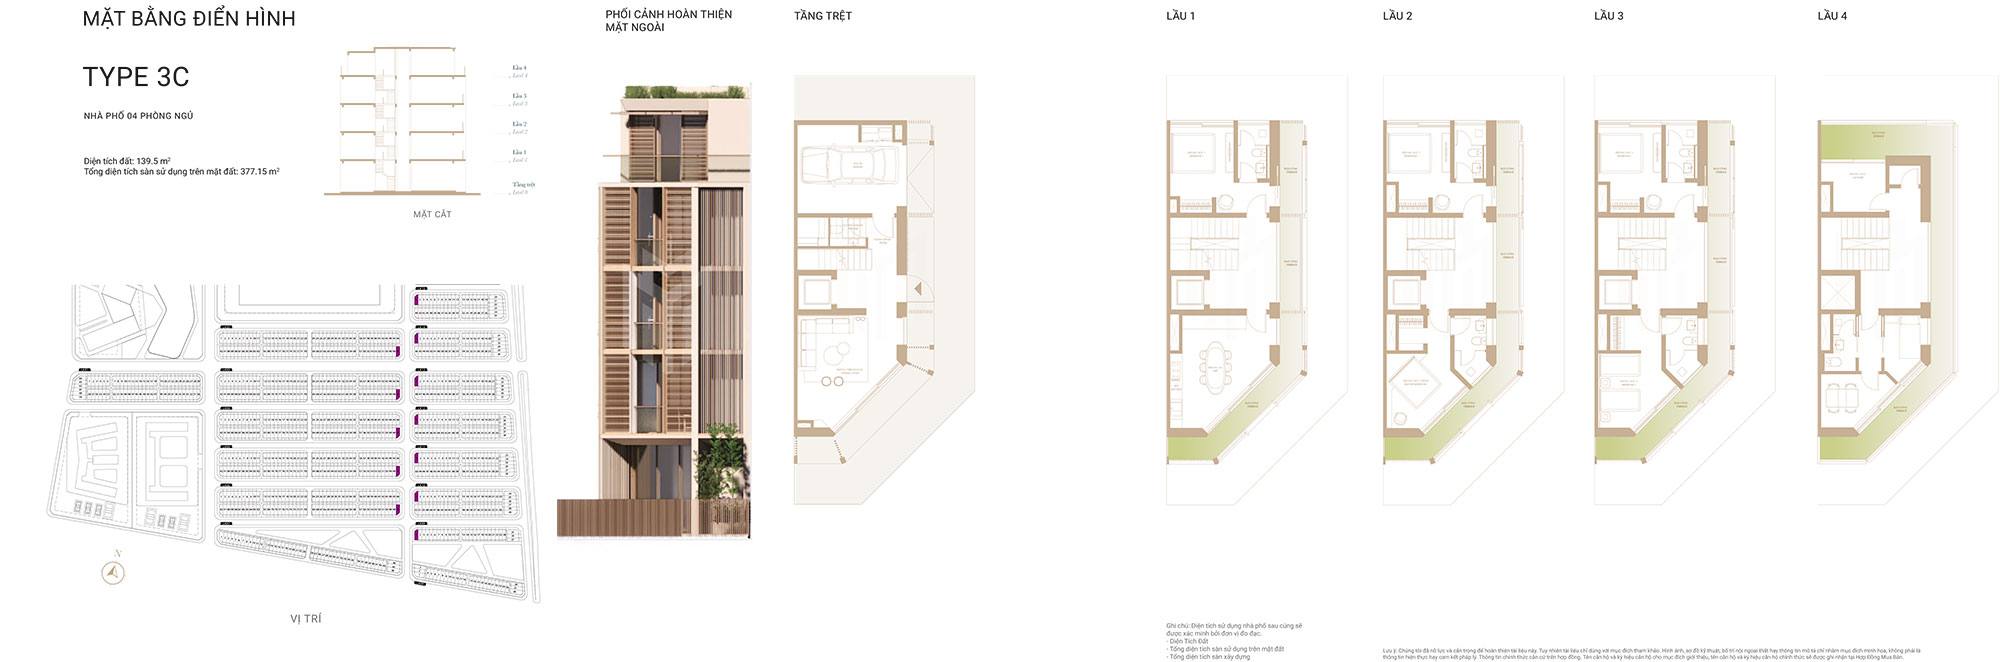 Mặt bằng thiết kế nhà phố Soho The Global City Masterise Homes loại 3C